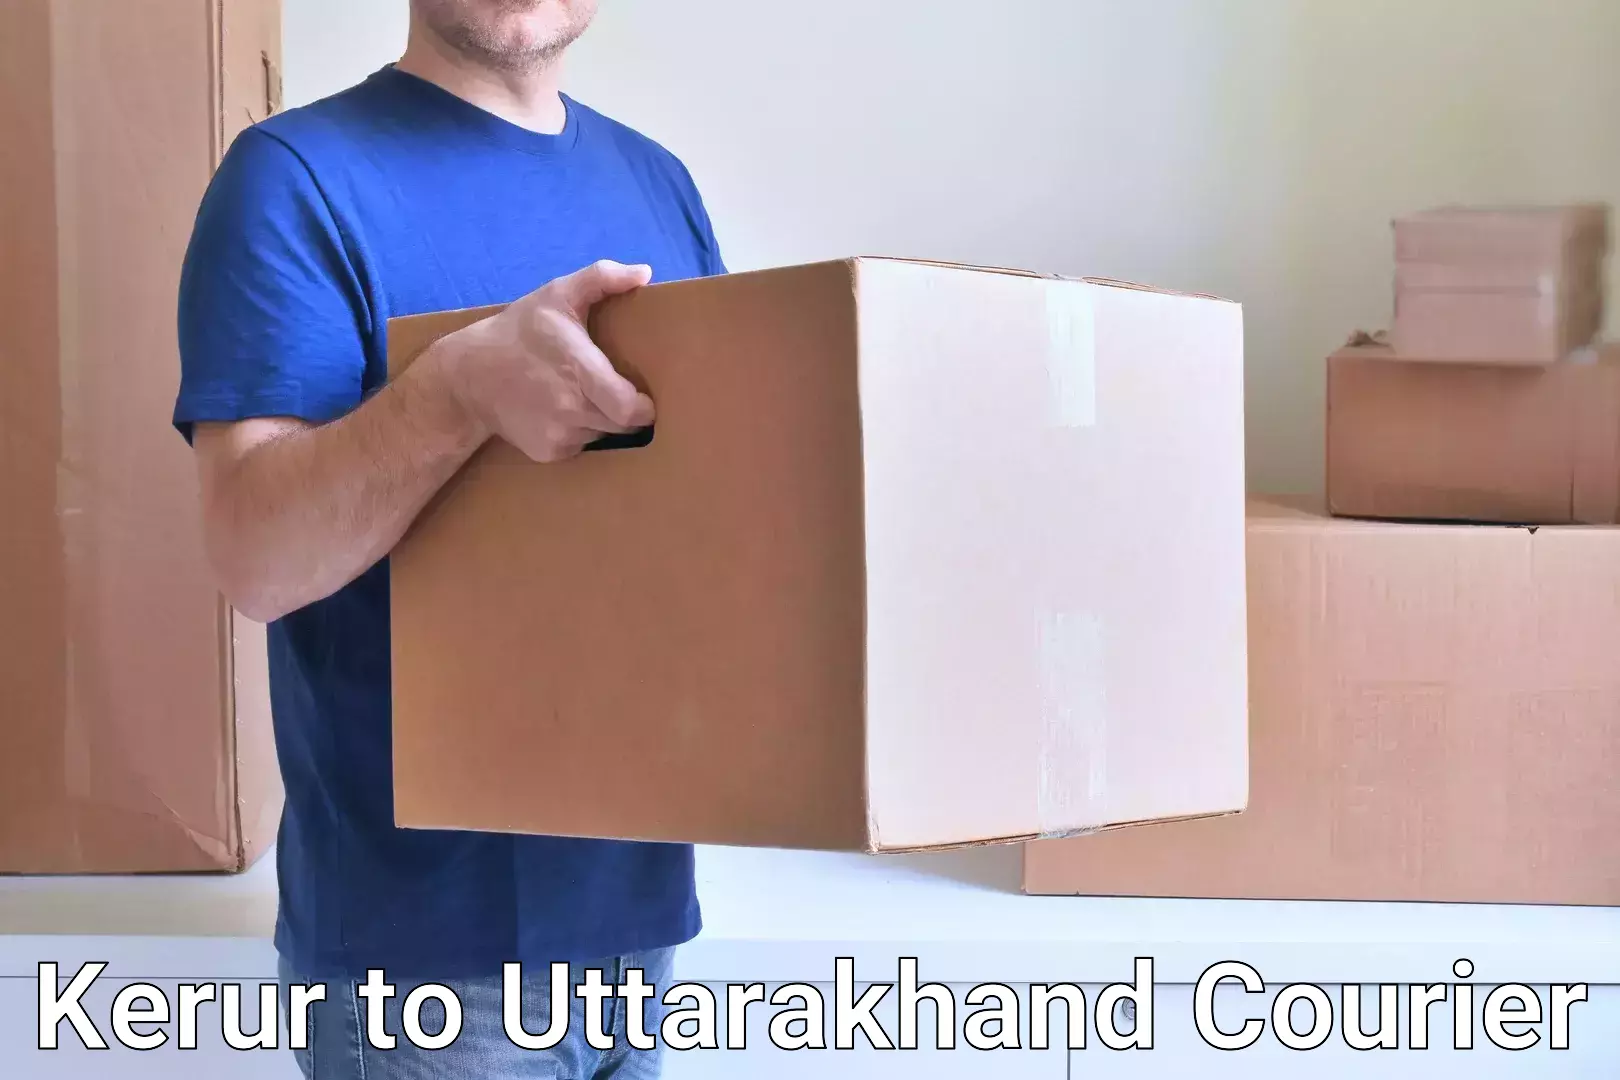 Comprehensive parcel tracking Kerur to Uttarakhand